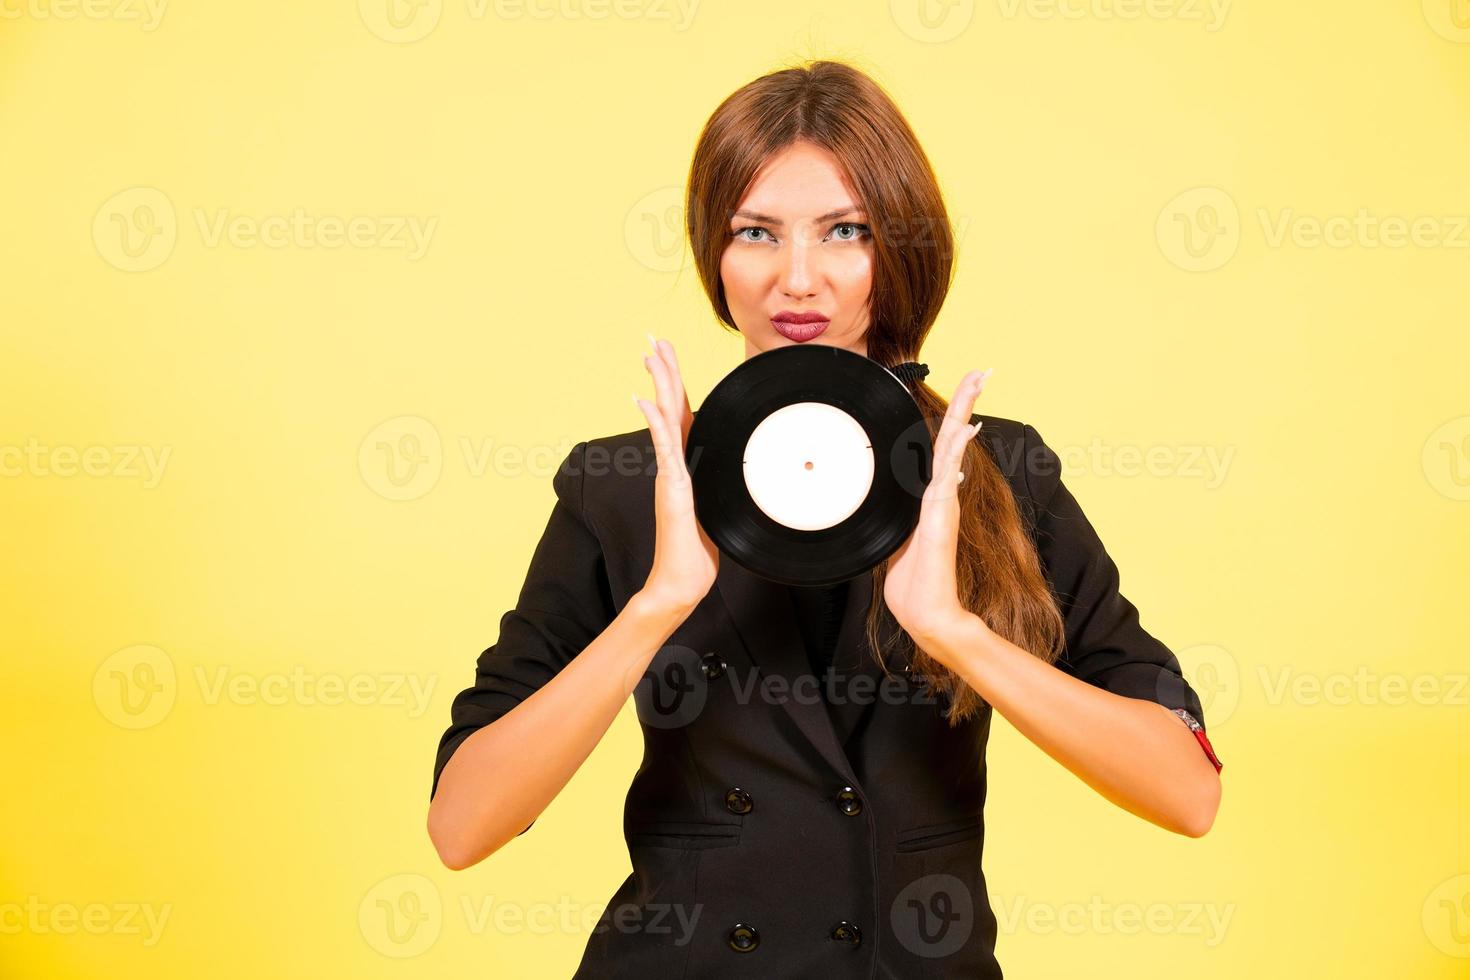 Mädchen im ein schwarz passen auf ein Gelb Hintergrund mit ein Aufzeichnung im ihr Hände, Musik, das Mädchen zeigt an Emotionen foto